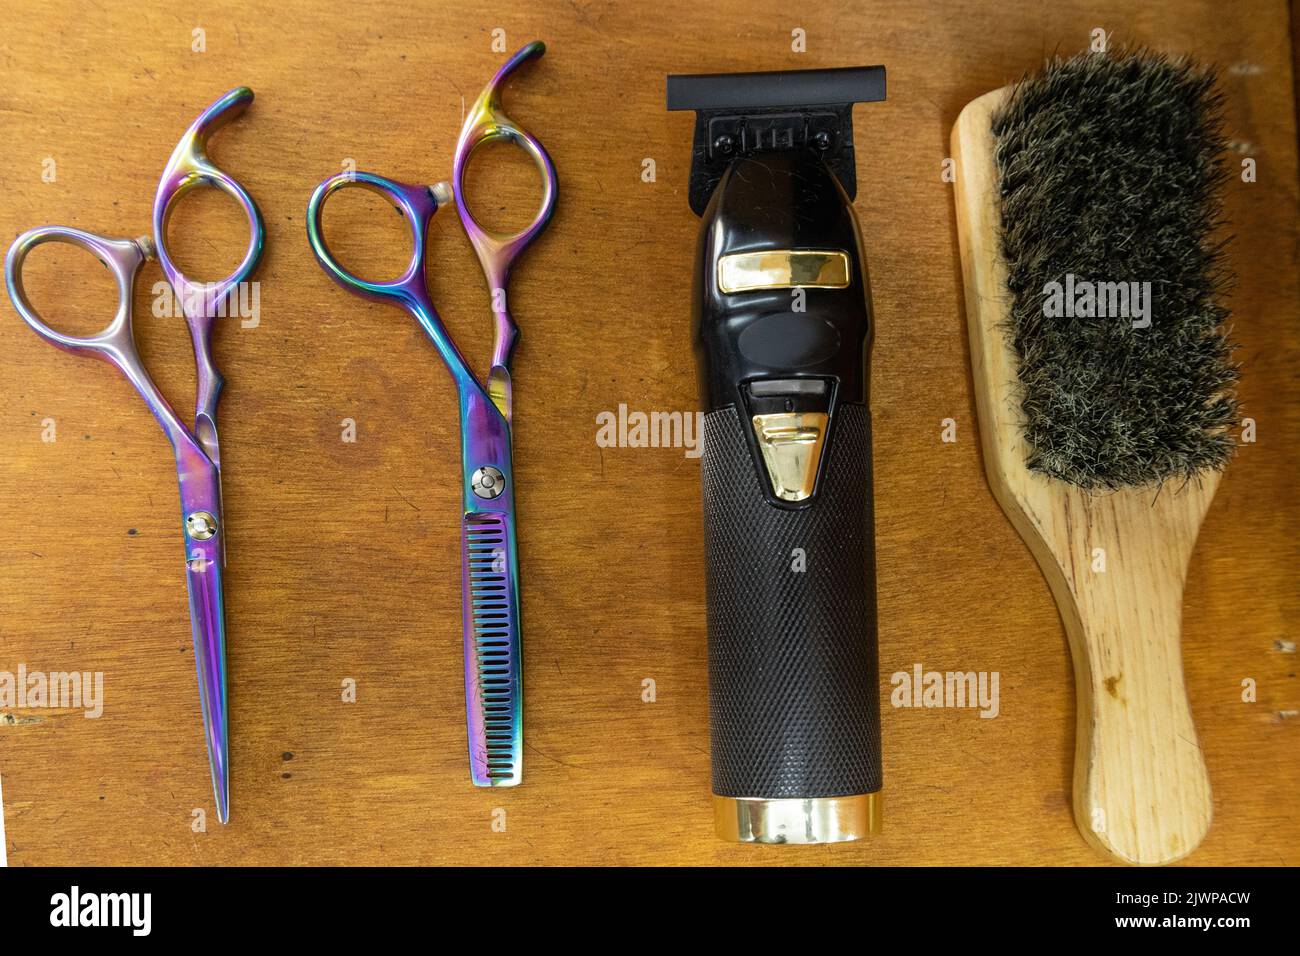 détails d'une machine à raser dans le bureau avec des outils de coiffure parmi eux: ciseaux professionnels pour couper les cheveux et une brosse, travail Banque D'Images